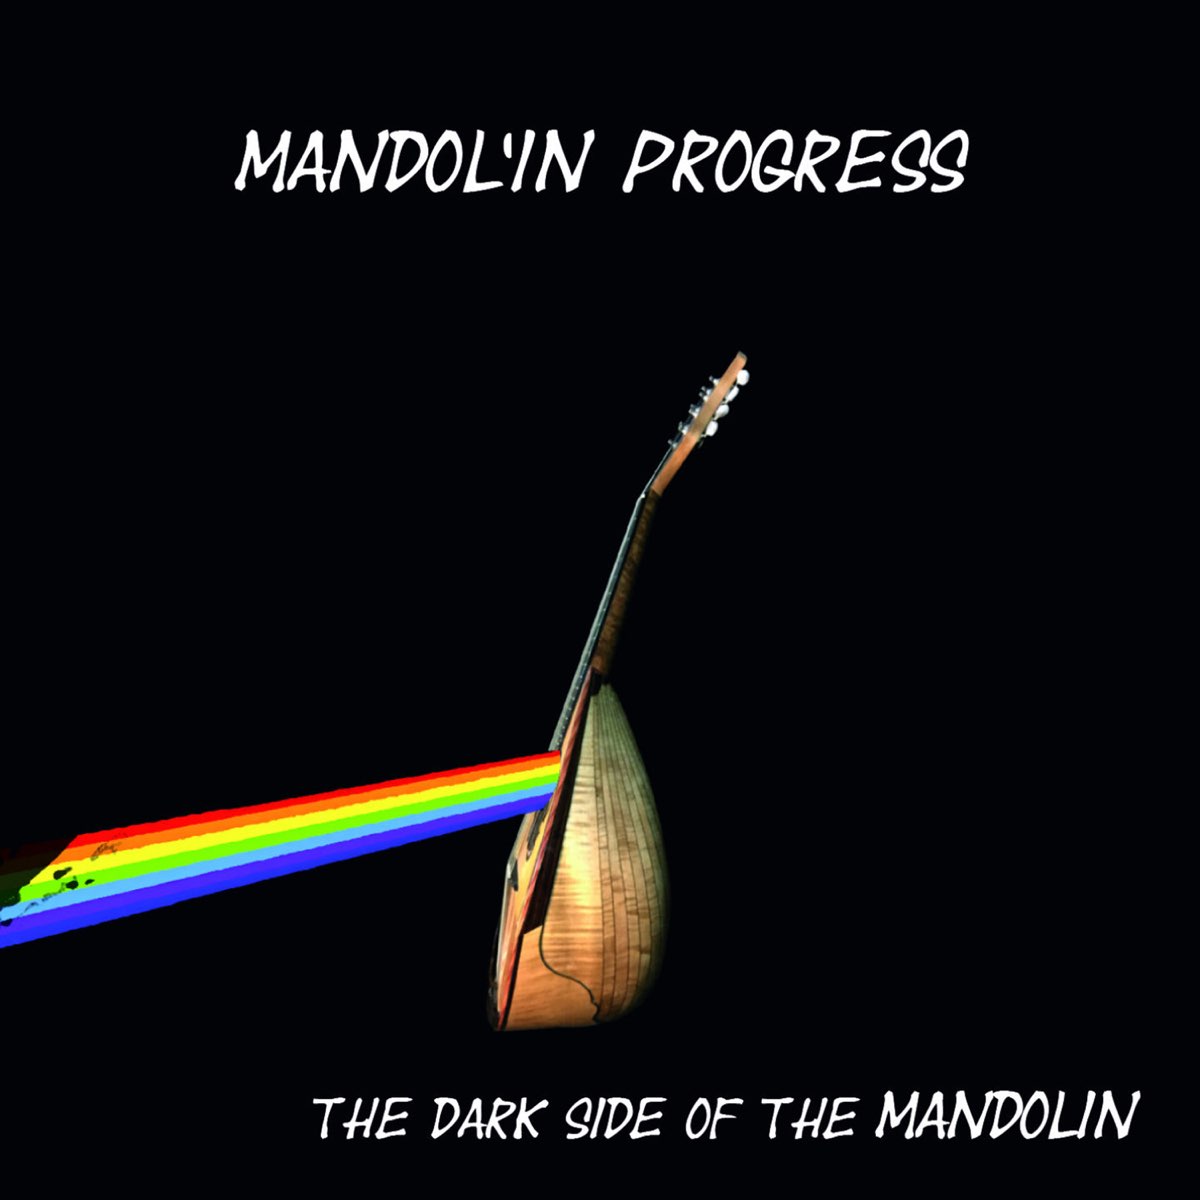 Mandol’in Progress, The Dark Side of the Mandolin, Felmay 2017